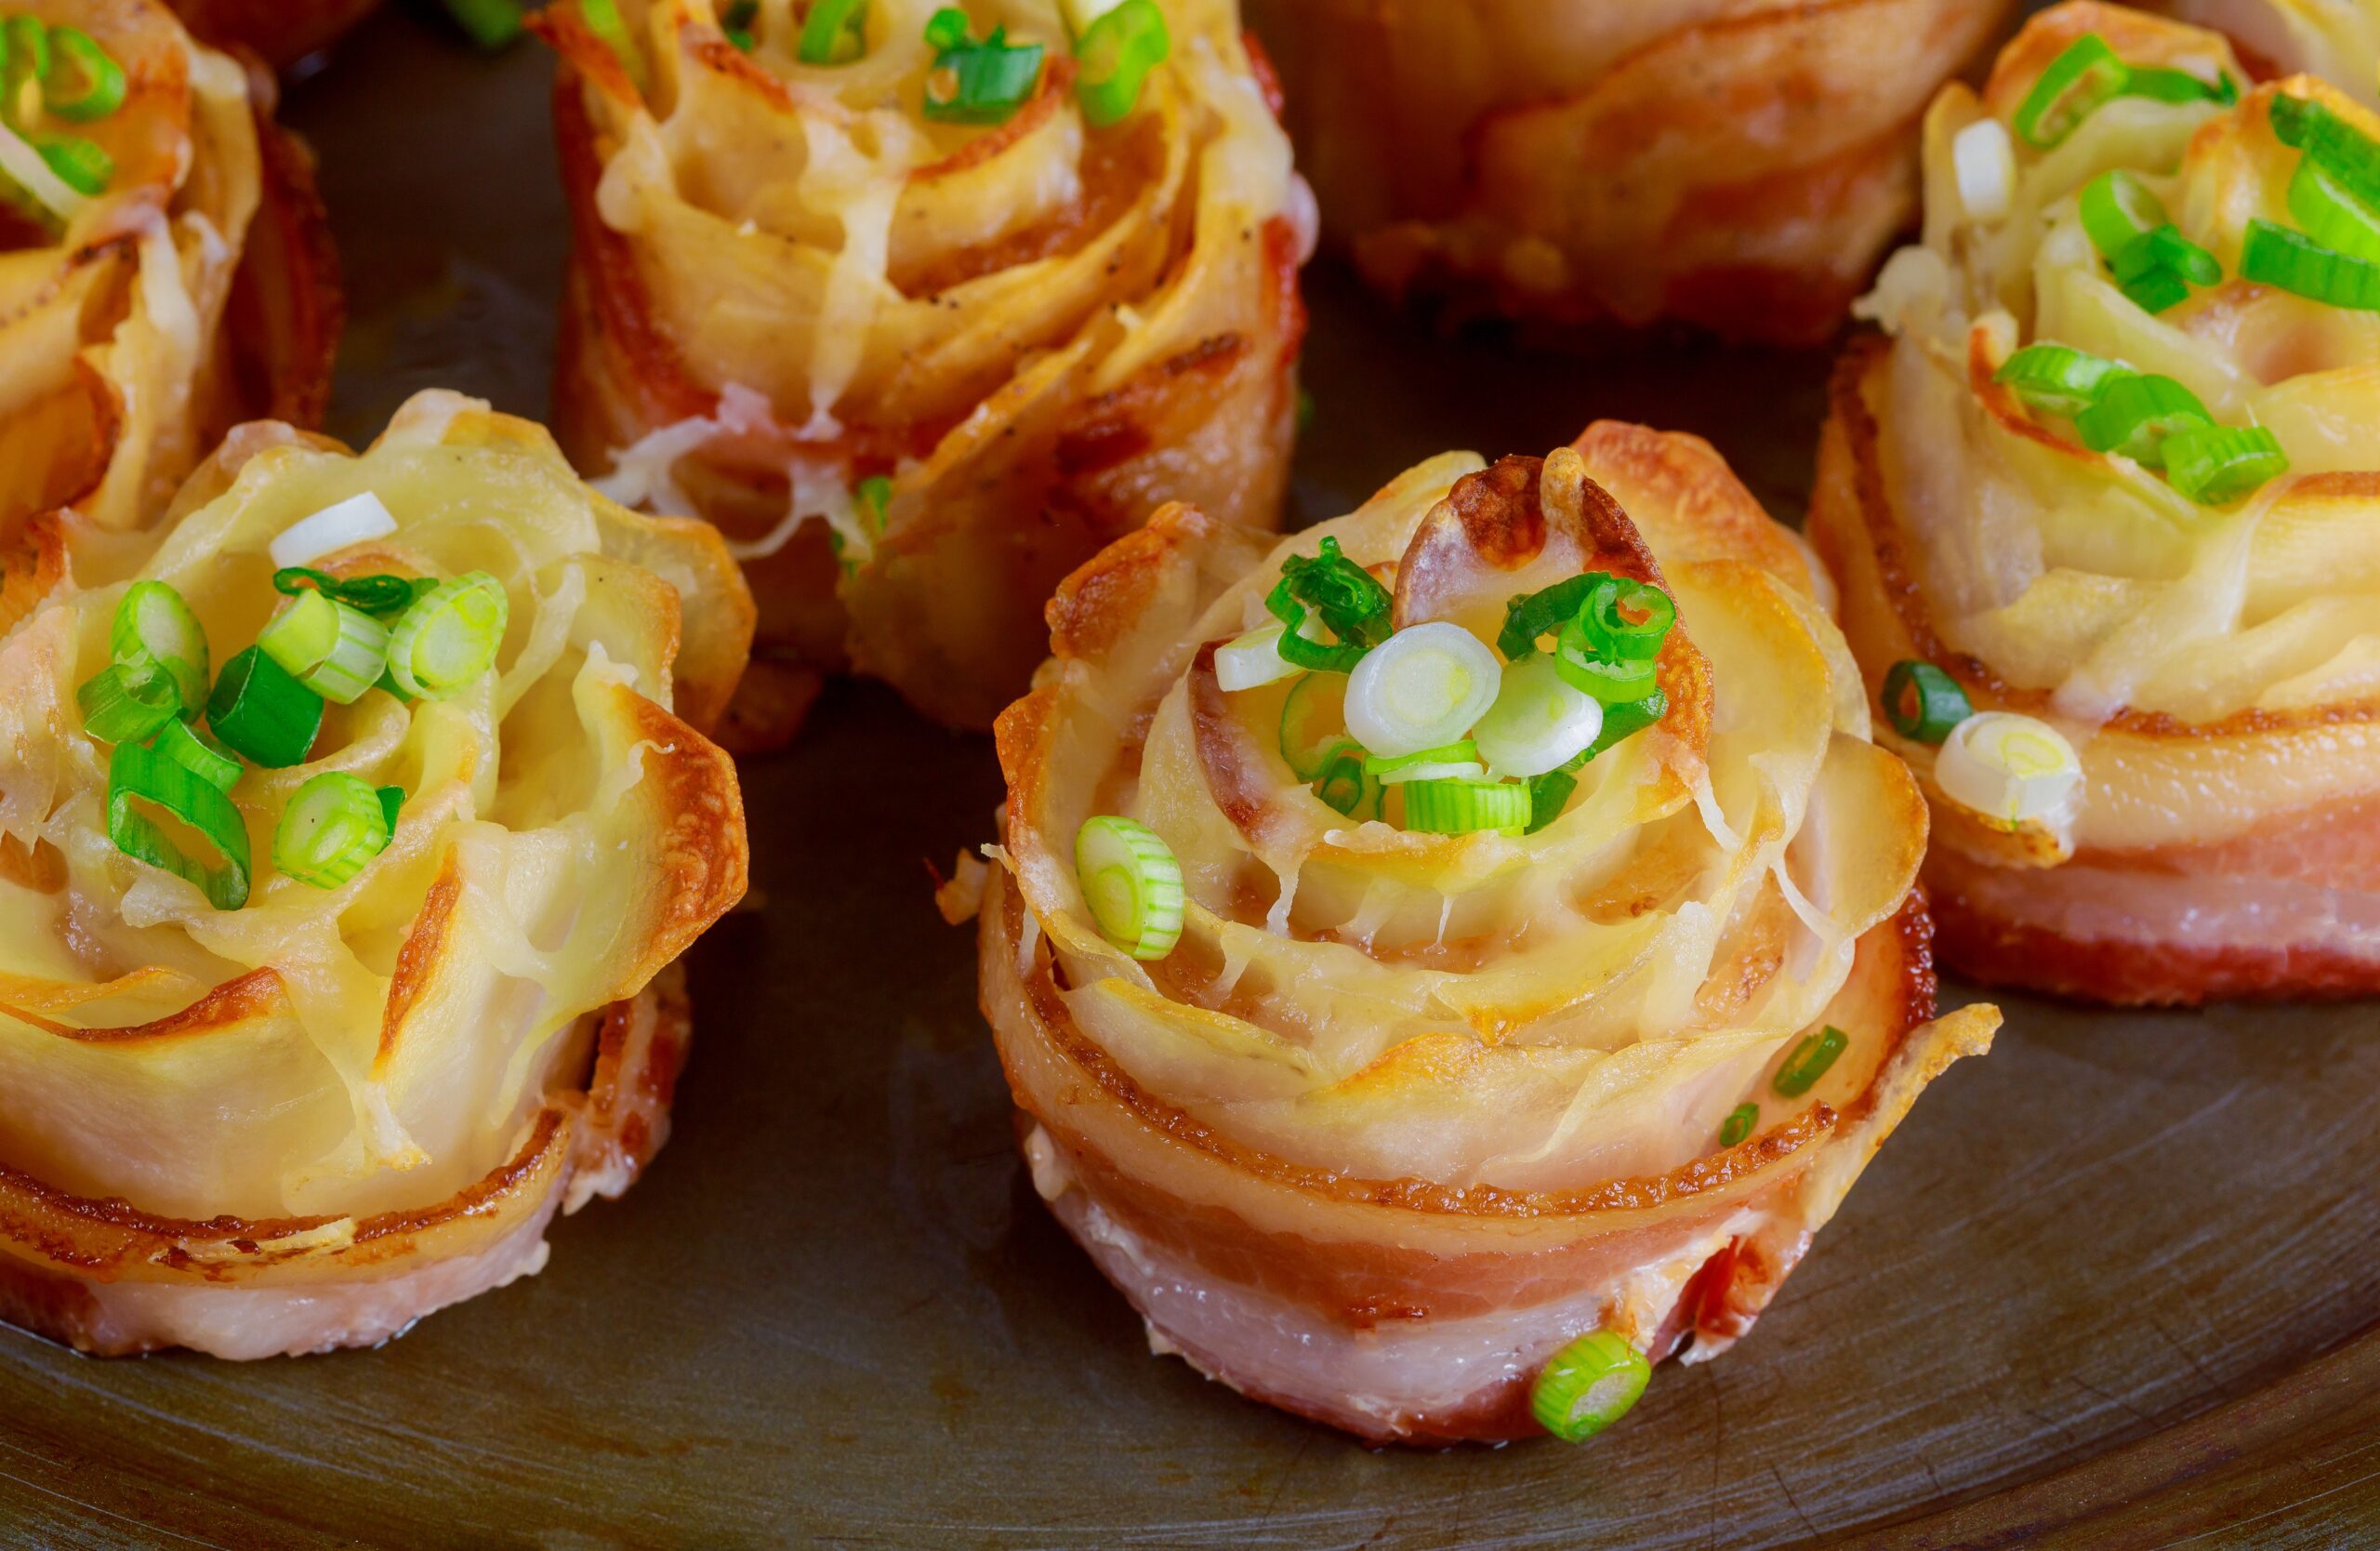 Roselline di patate e bacon: deliziose da vedere e da gustare